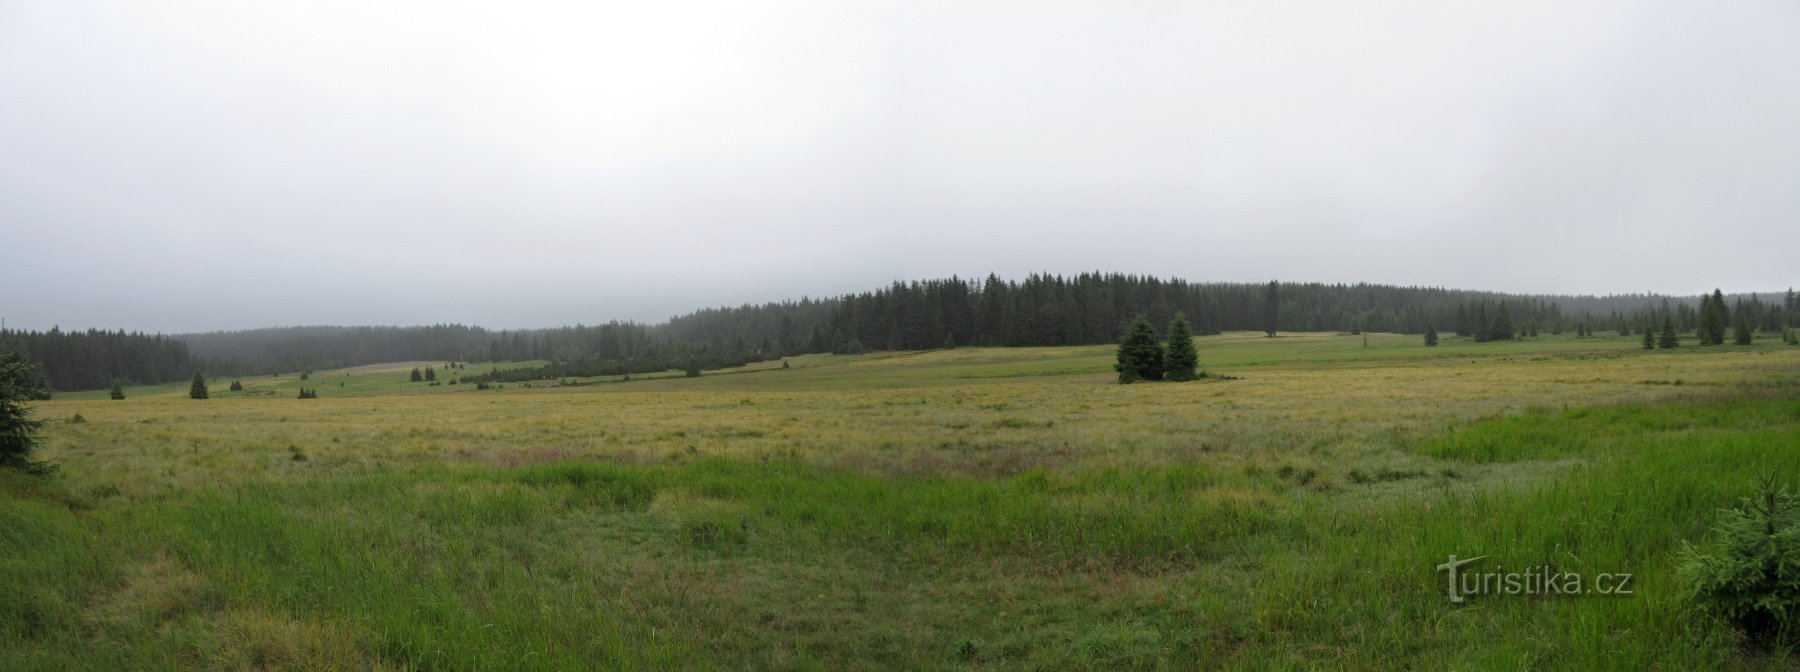 Reserva natural nacional Rolavská vrchoviště